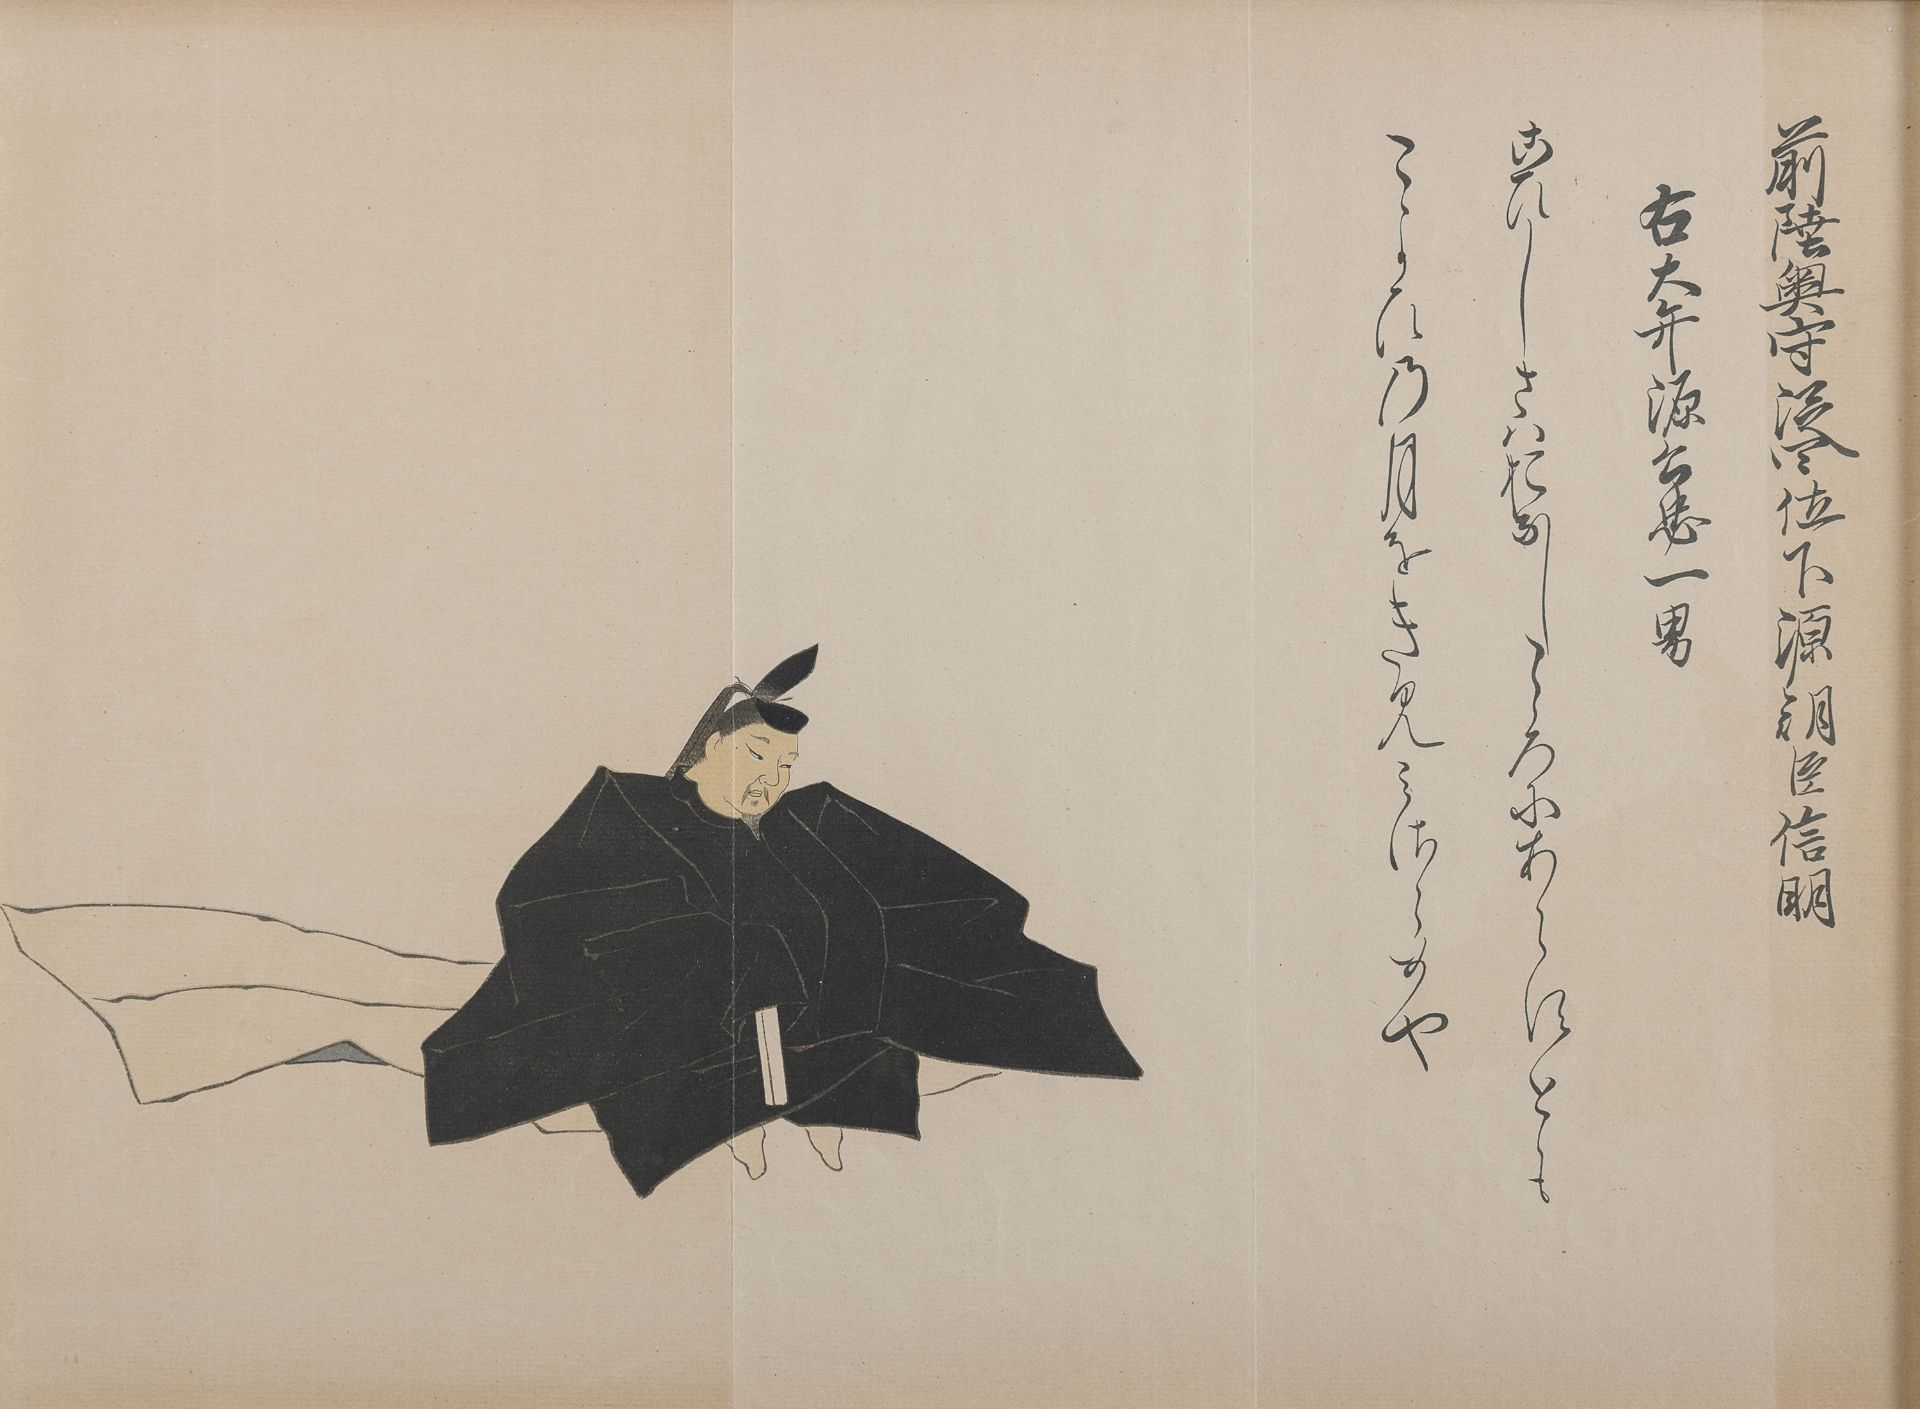 A JAPANESE RETOUCHED PRINT DEPICTING DAIMYO FUJIWARA 20TH CENTURY